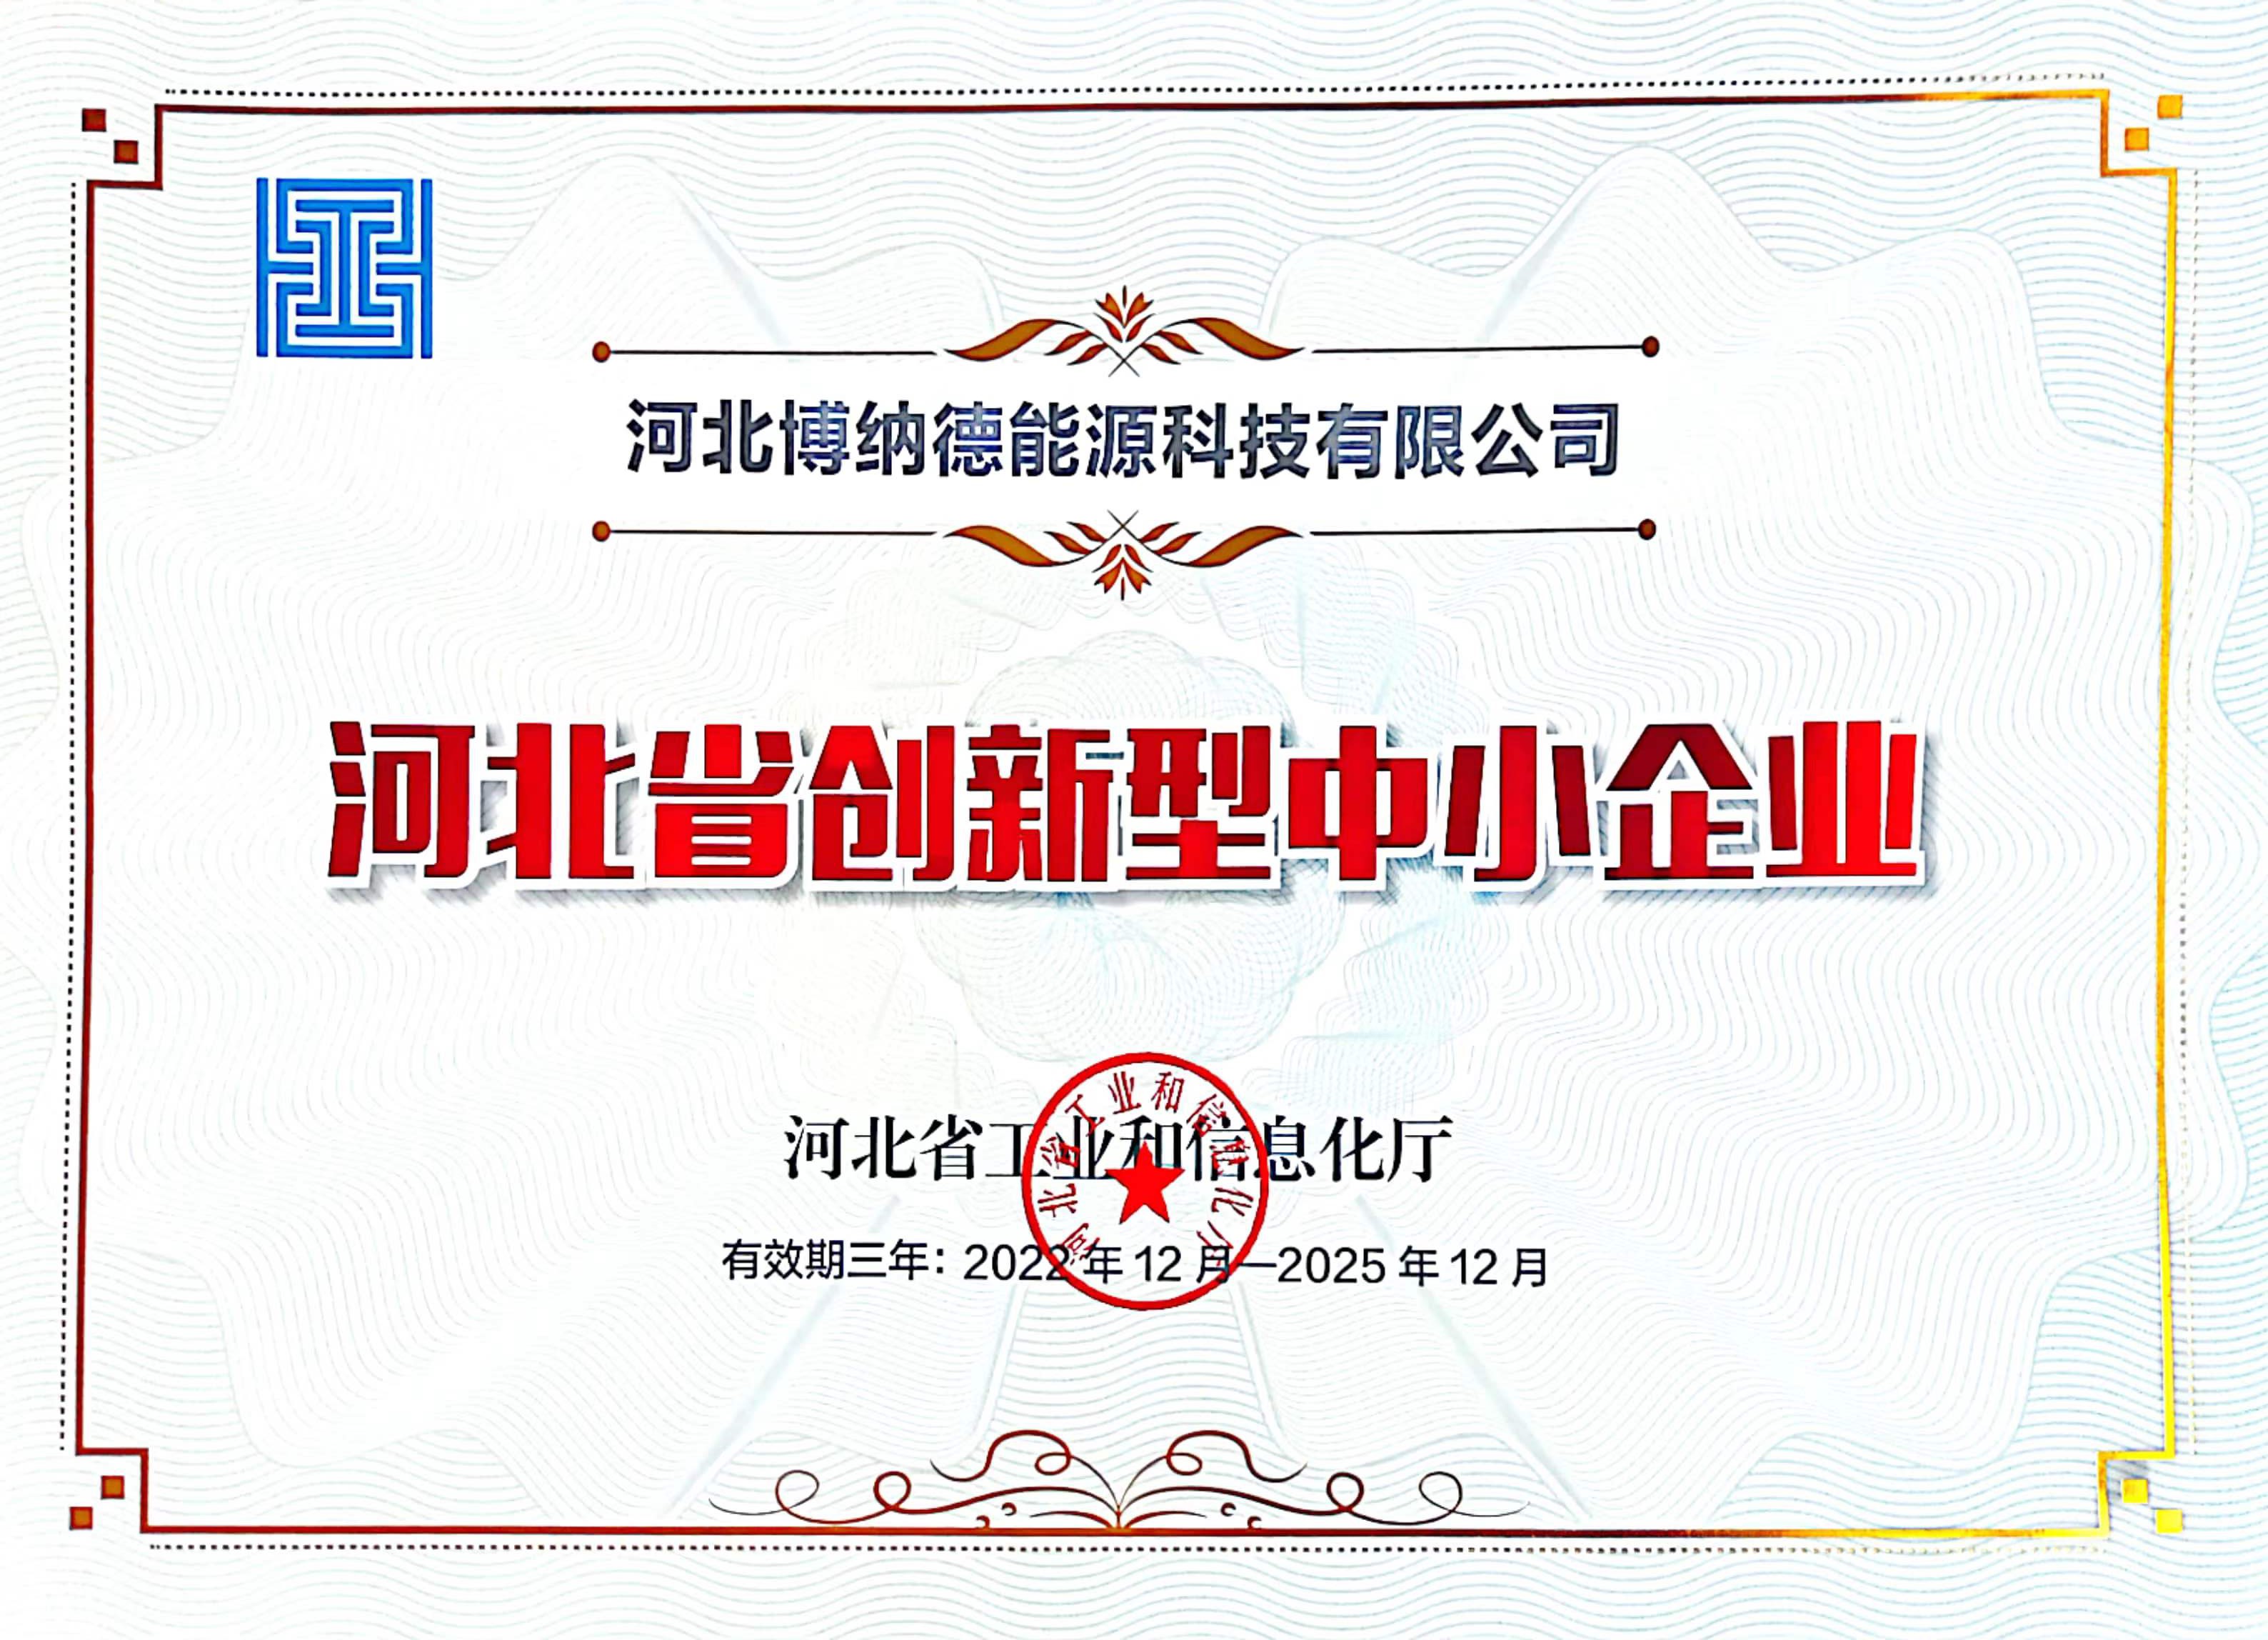 博納德公司榮獲“河北省創新型中小企業”榮譽稱號